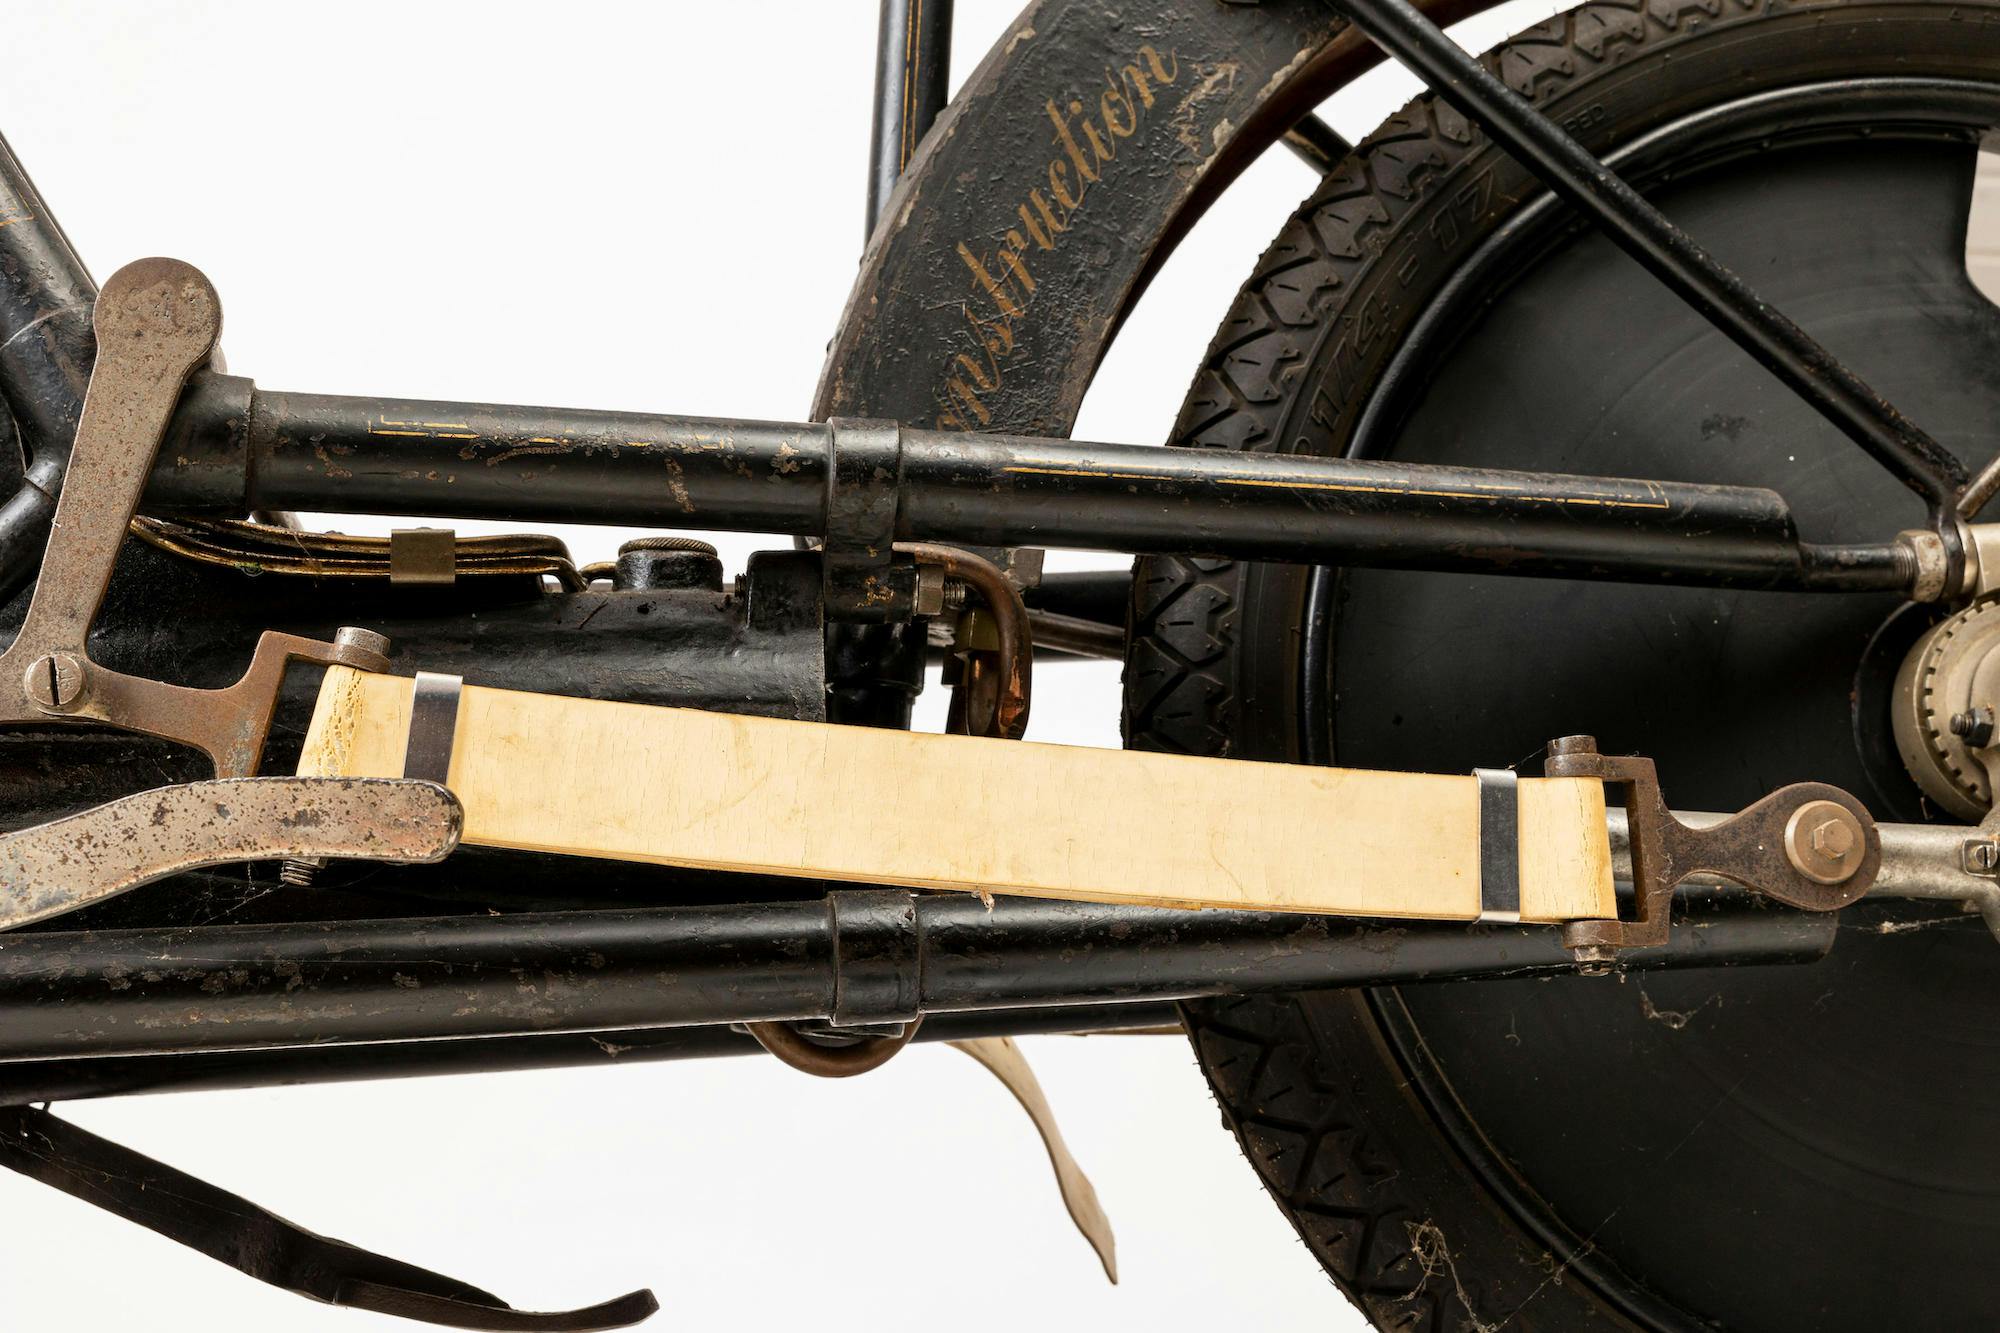 1894 Hildebrand Wolfmuller Vintage Motorcycle detail